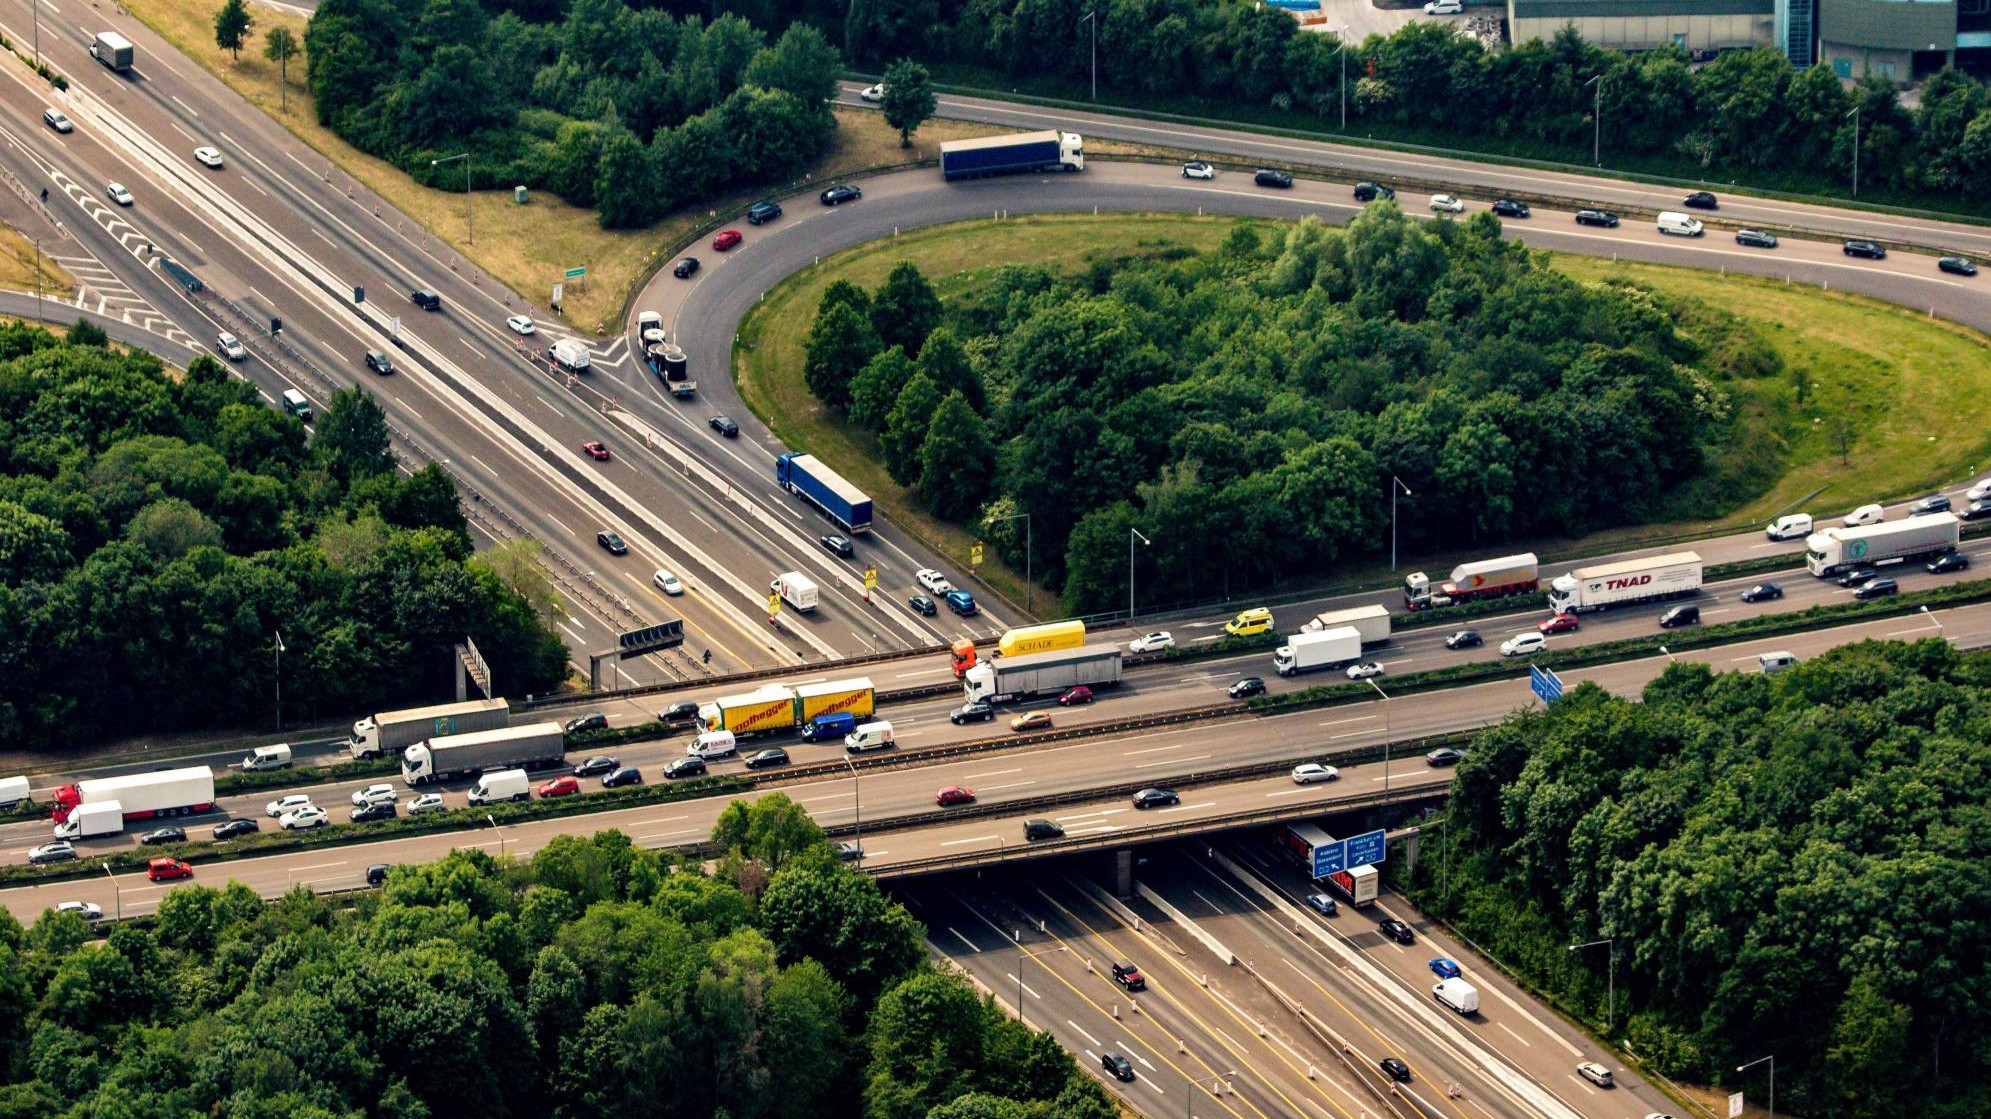 Autobahnausbau - Leverkusener Oberbürgermeister Richrath fordert mehr Mitspracherecht der Kommunen